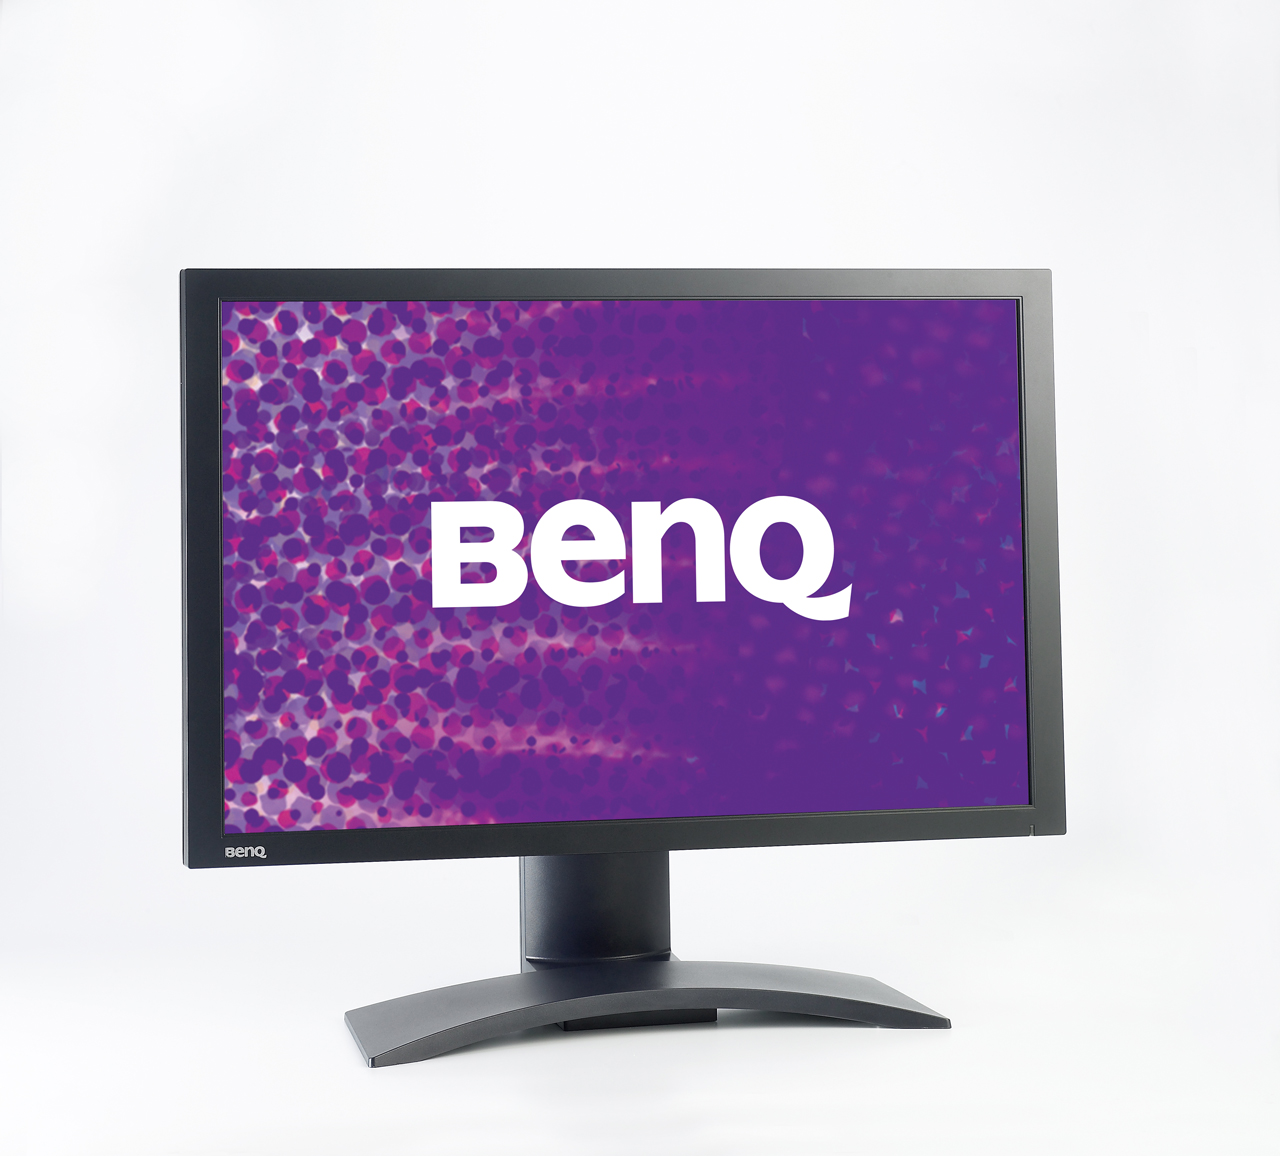 Immagine pubblicata in relazione al seguente contenuto: BenQ lancia il monitor 24-inch FP24WJ con HDMI e DVI-HDCP | Nome immagine: news4681_1.jpg